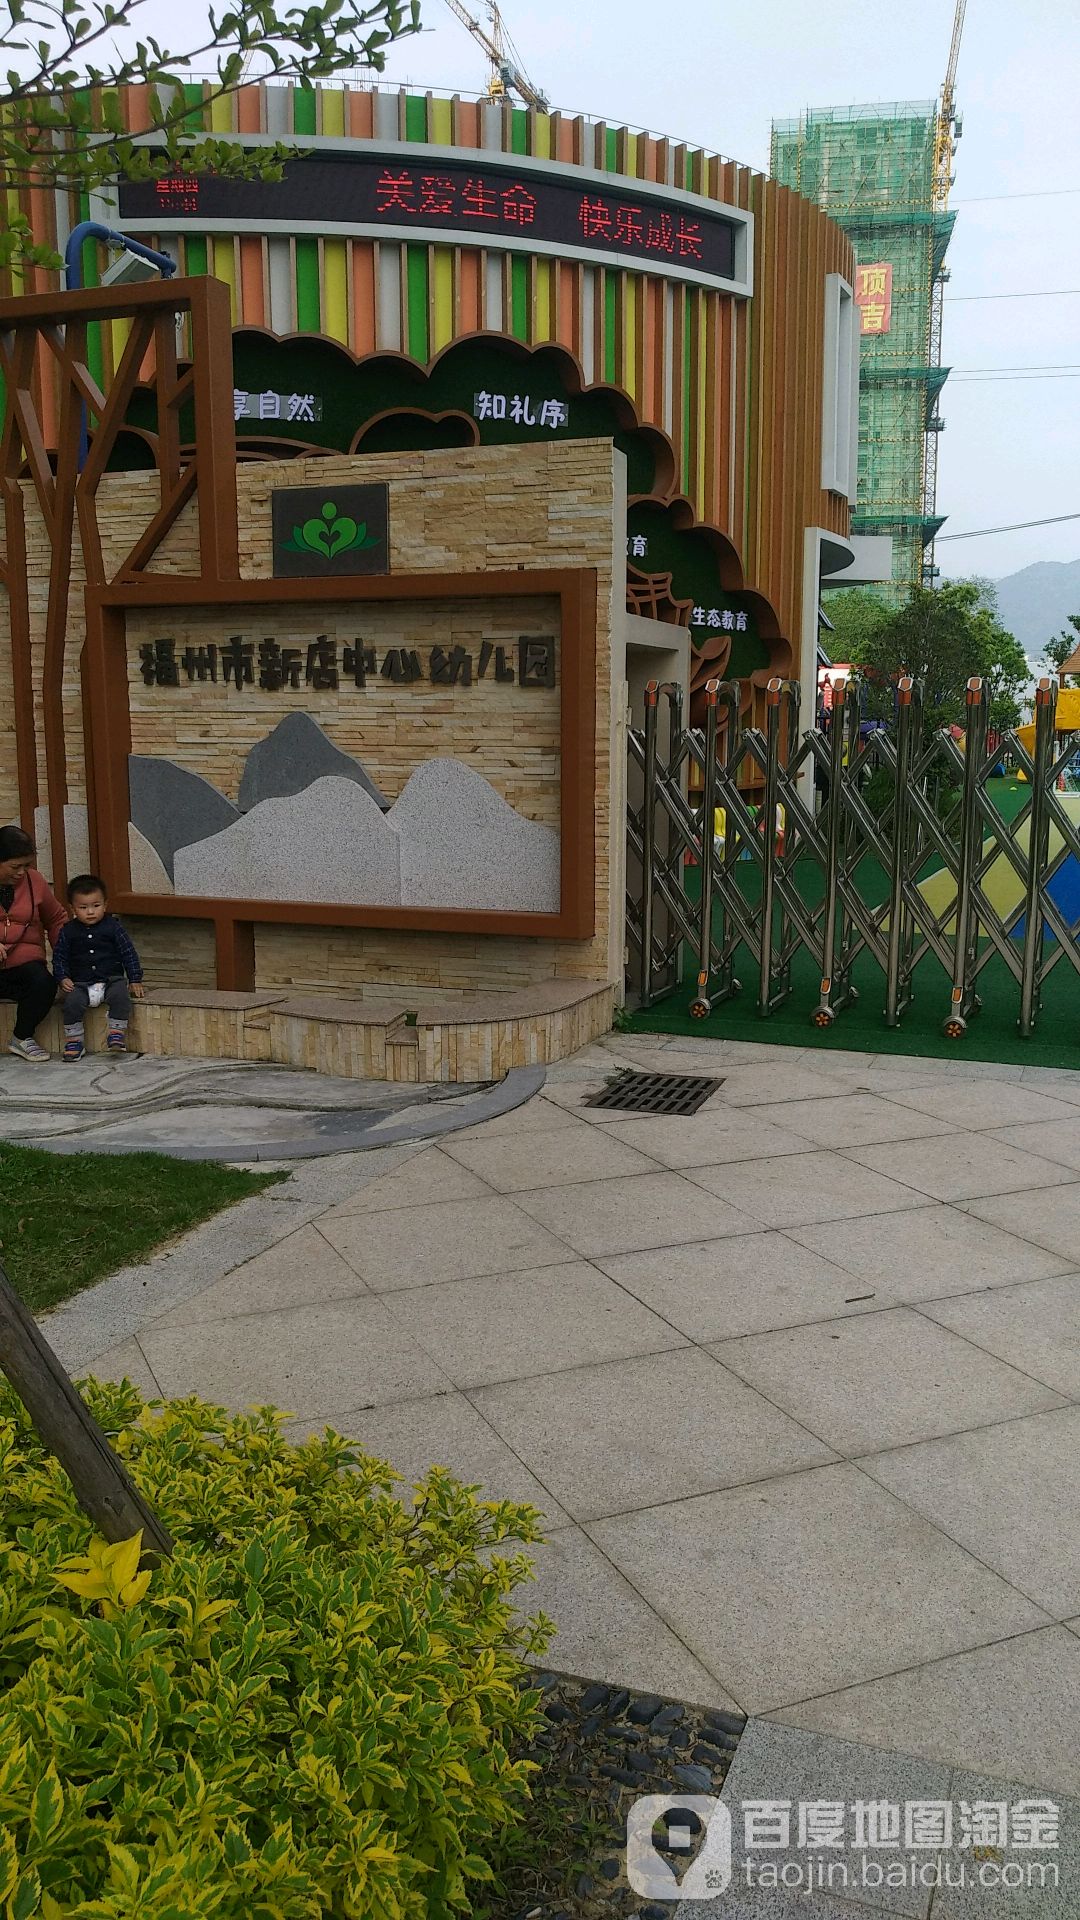 福州市新店中心幼儿园(龙头总园)的图片